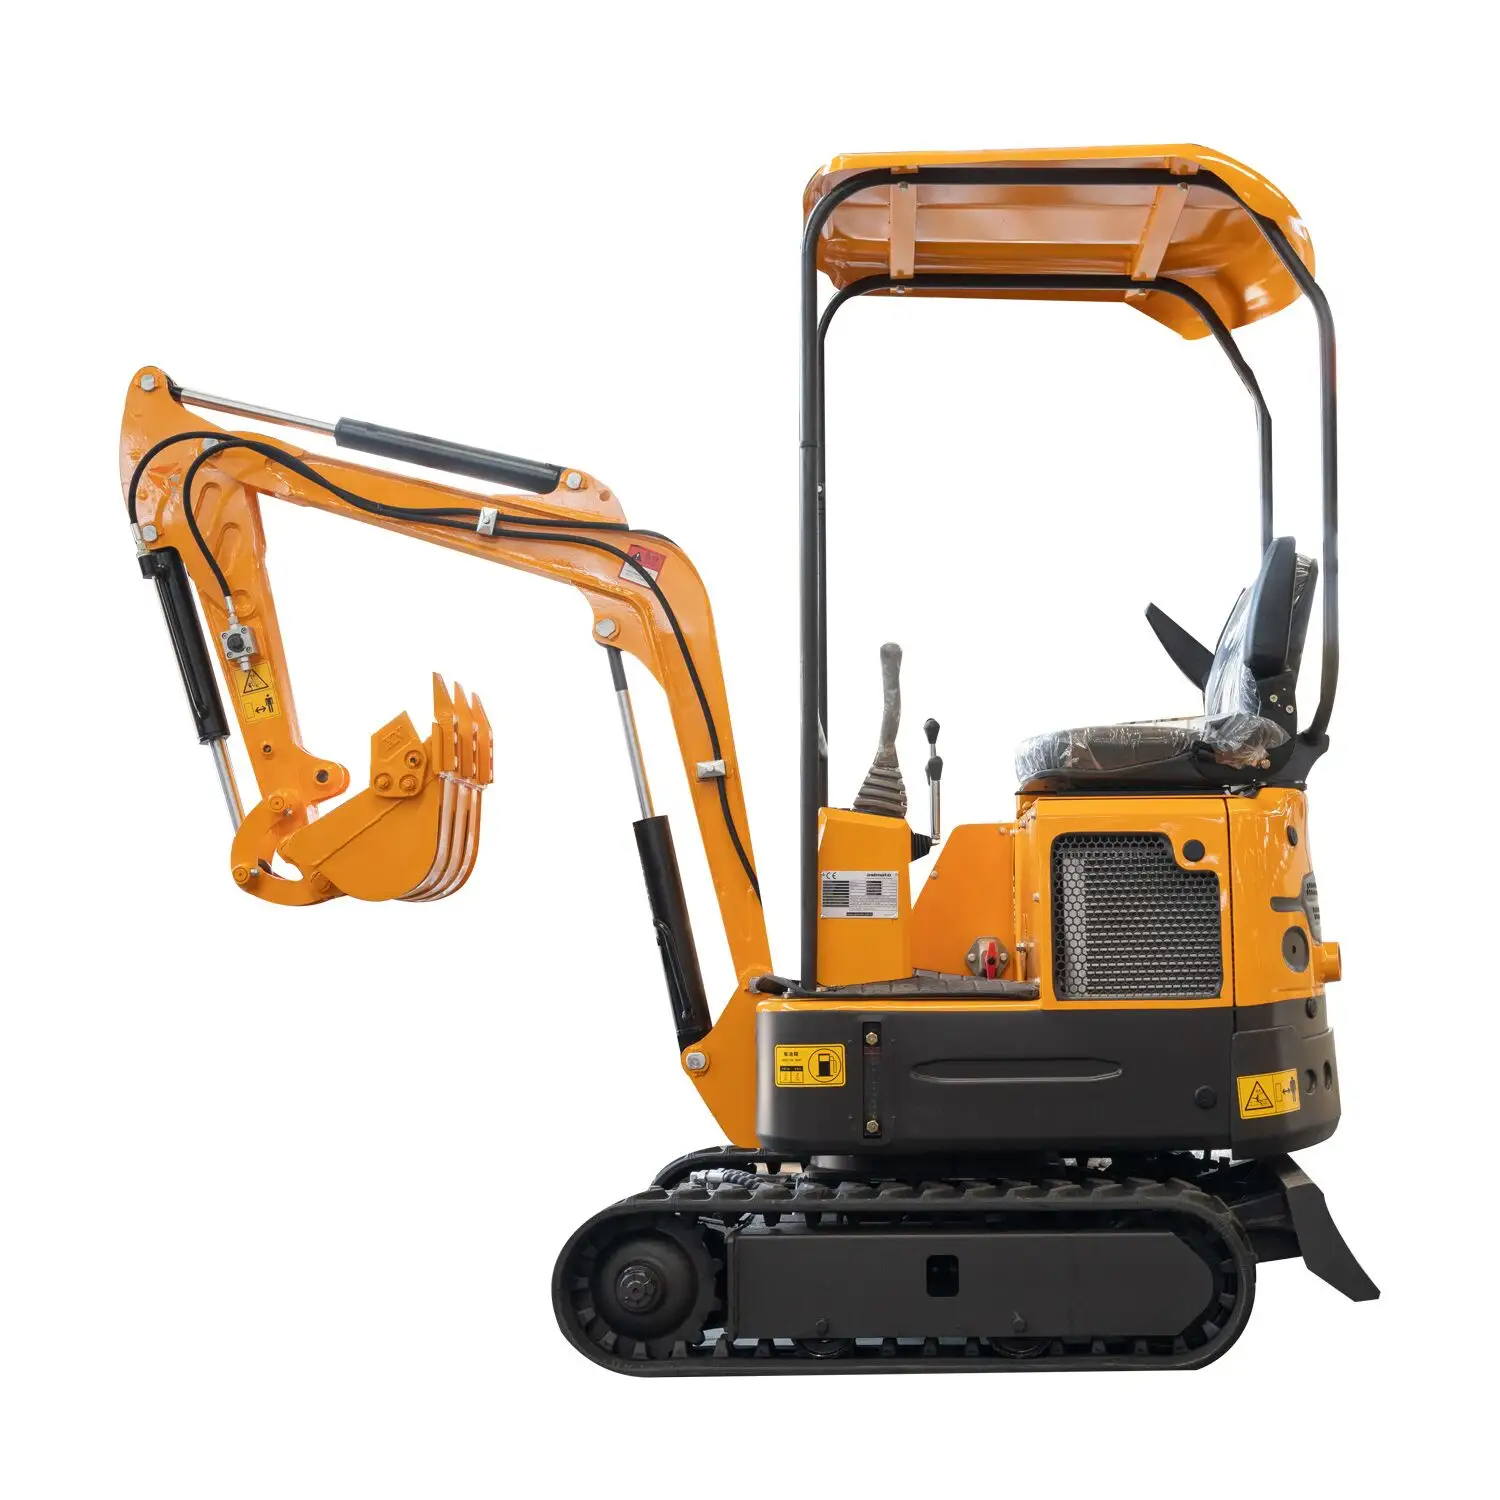 Hot Sale Mini Crawler Excavator Yg Dpt Diturunkan Gigi Ember 1000Kg Berat Operasi, Membeli